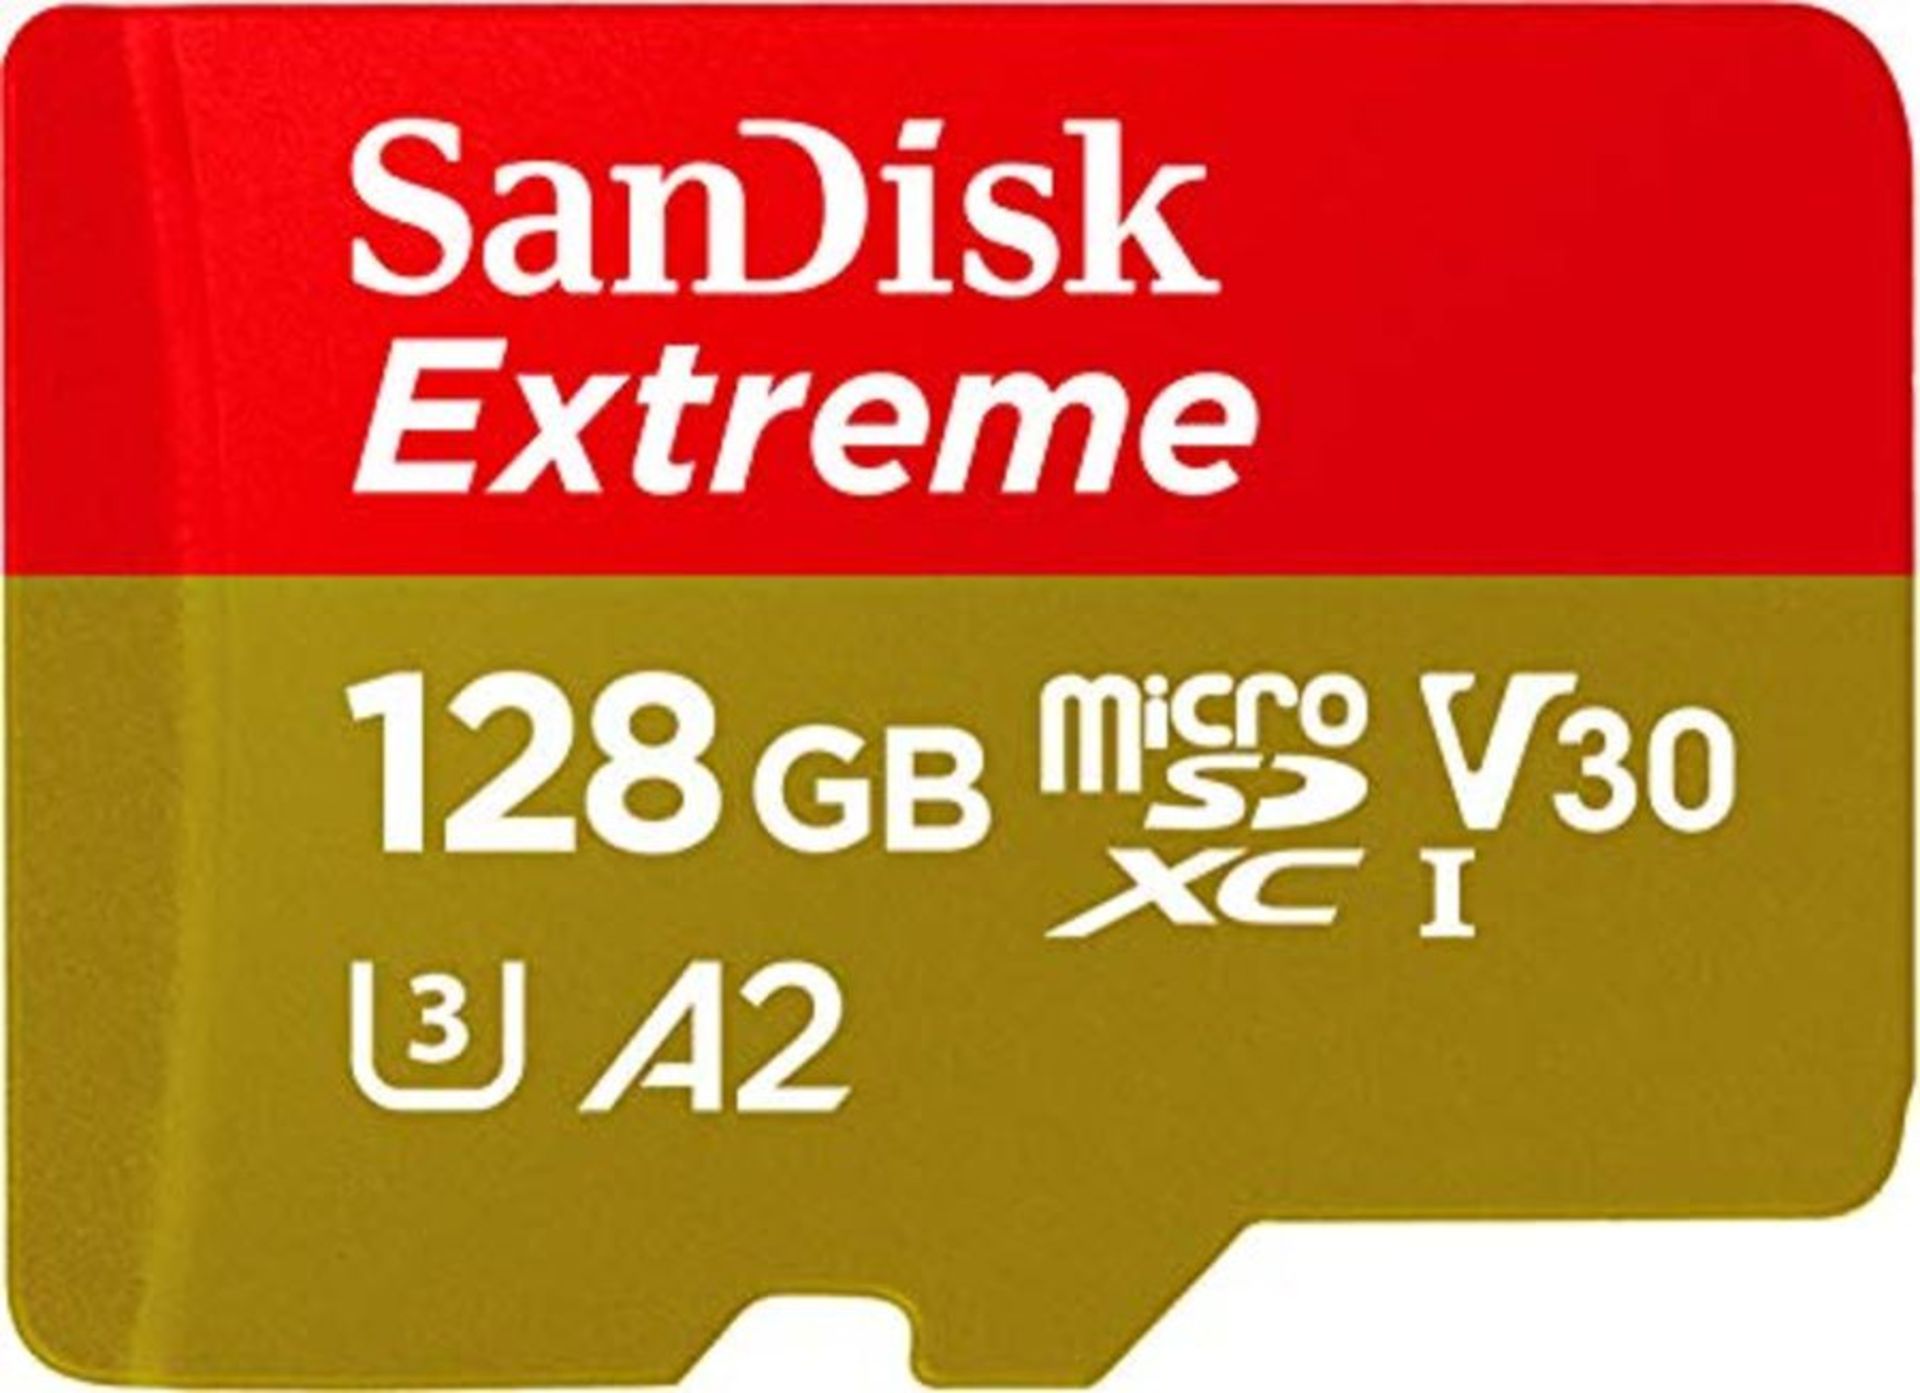 SanDisk Extreme Scheda di Memoria microSDXC da 128 GB e adattatore SD con App Performa